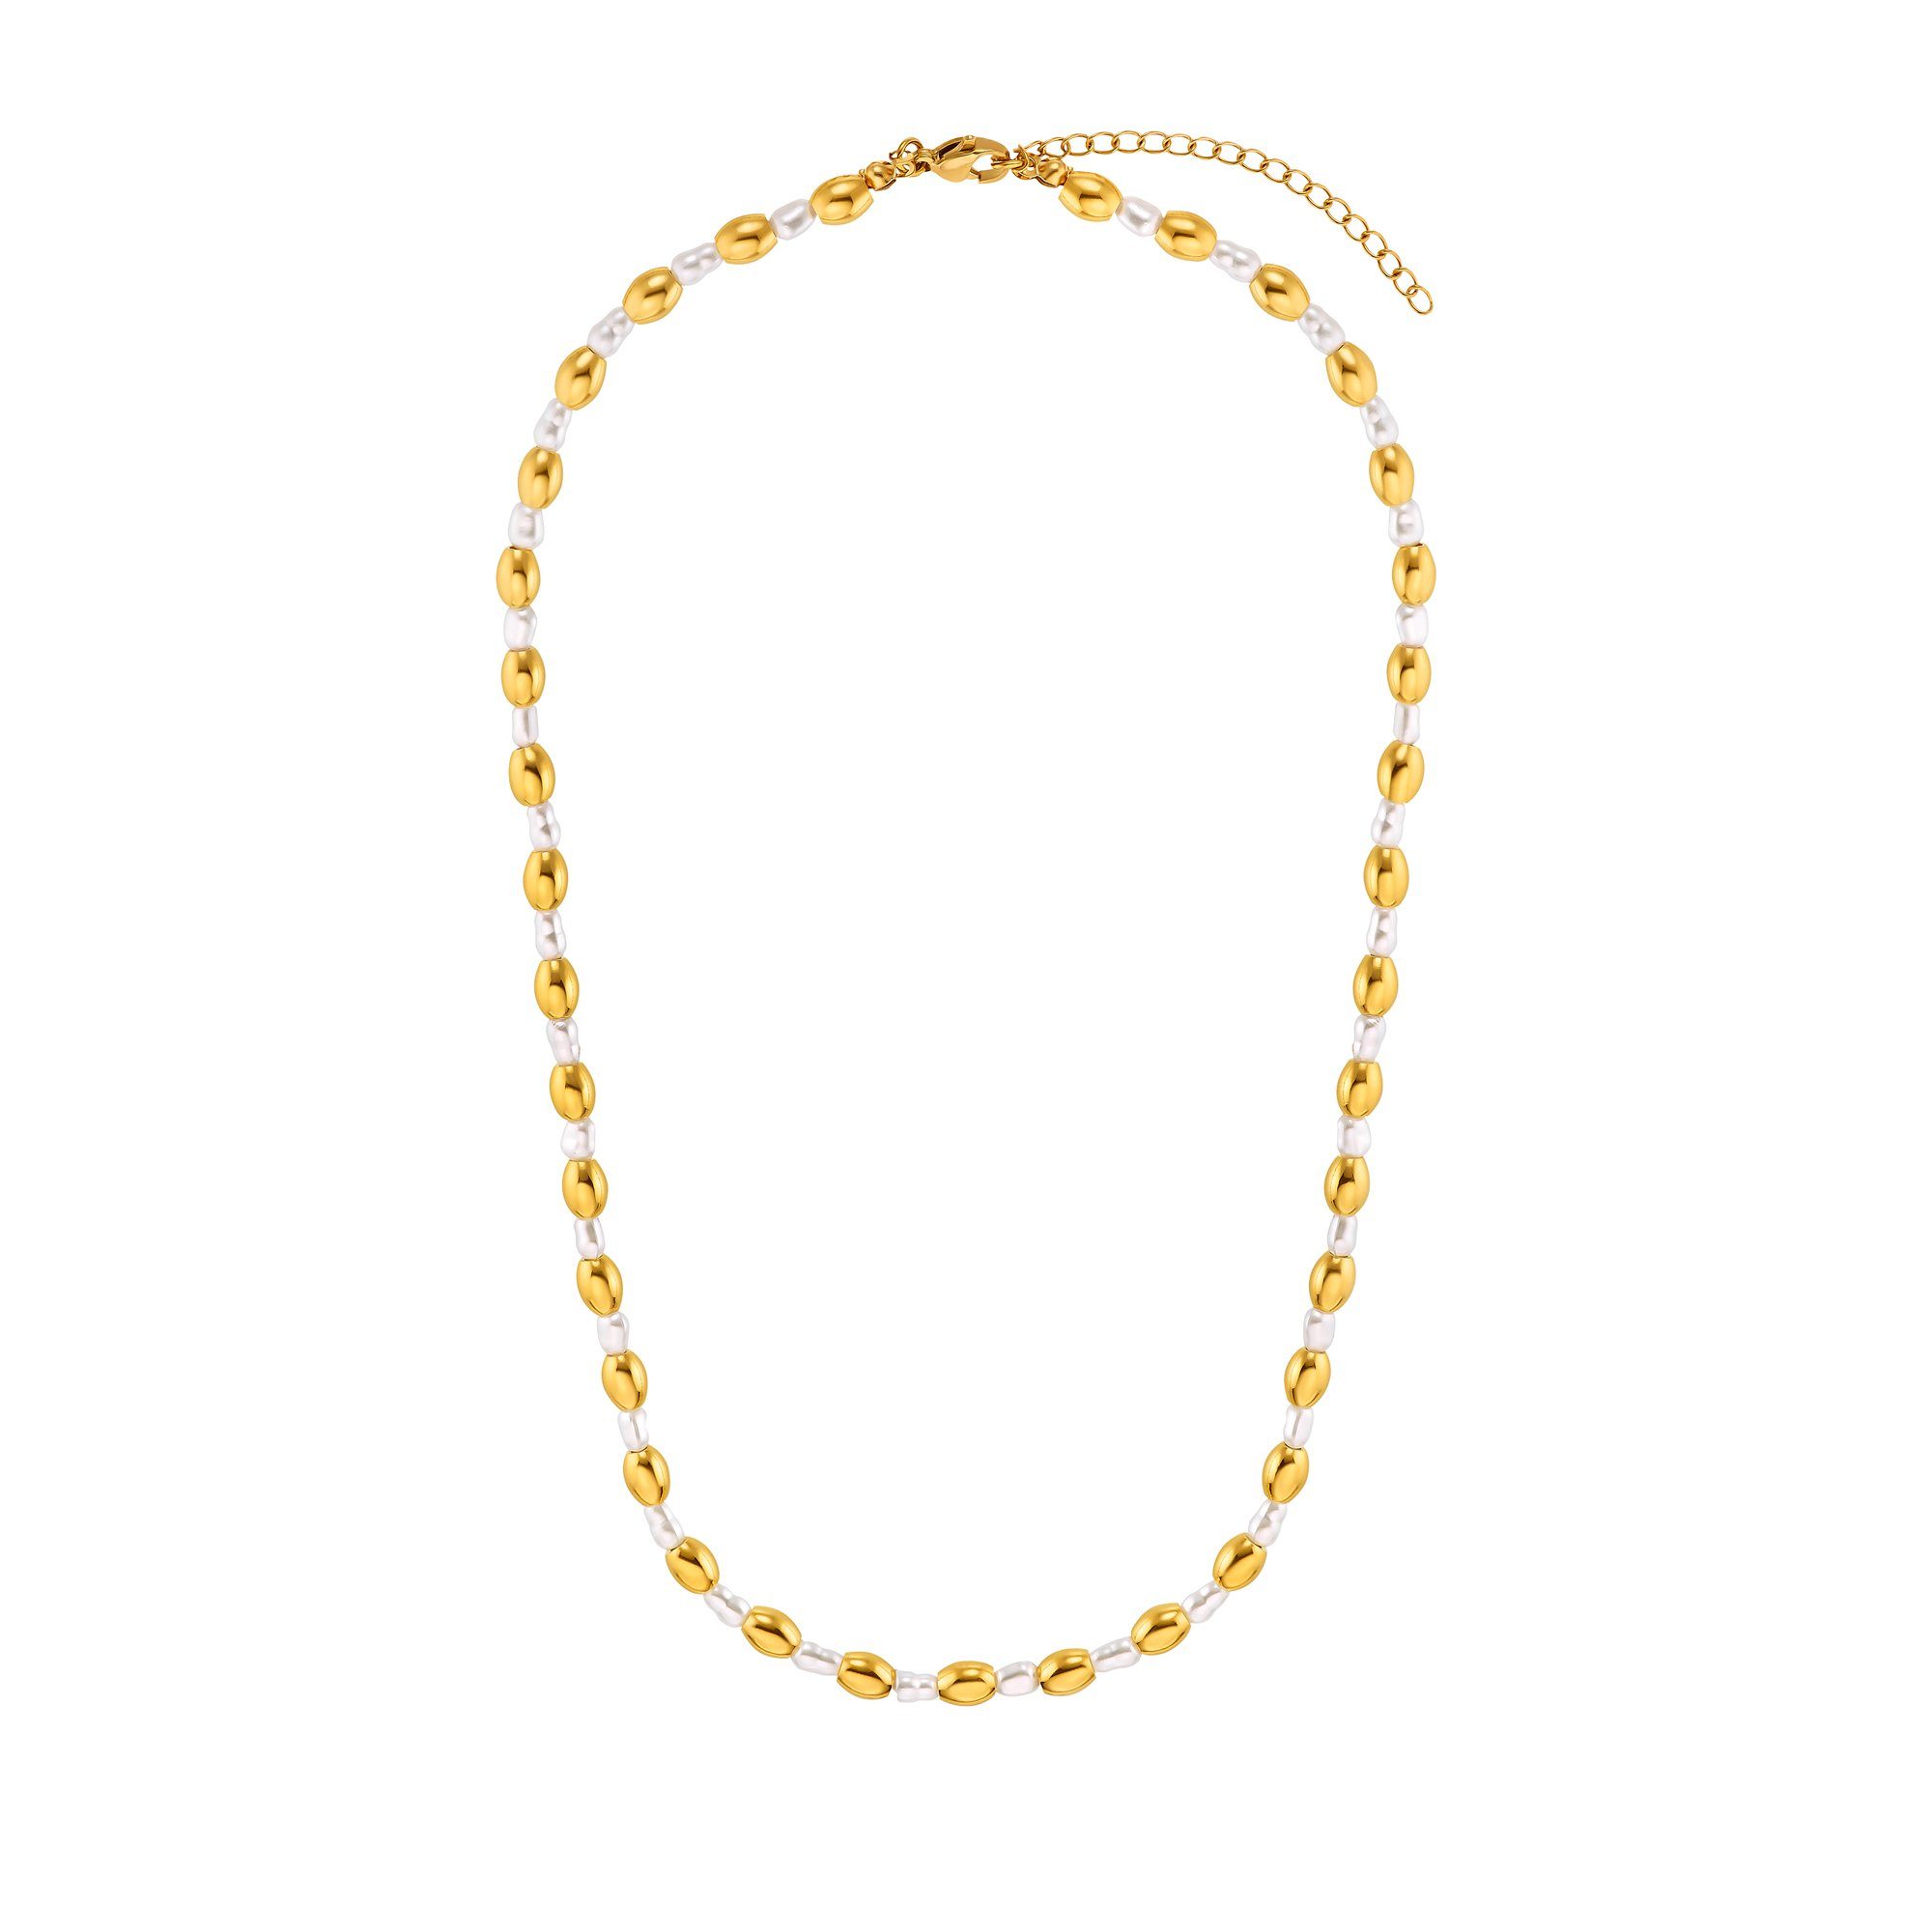 Heideman Collier Halskette (inkl. Perlen silberfarben poliert ausgefallenen Maya mit Geschenkverpackung), goldfarben